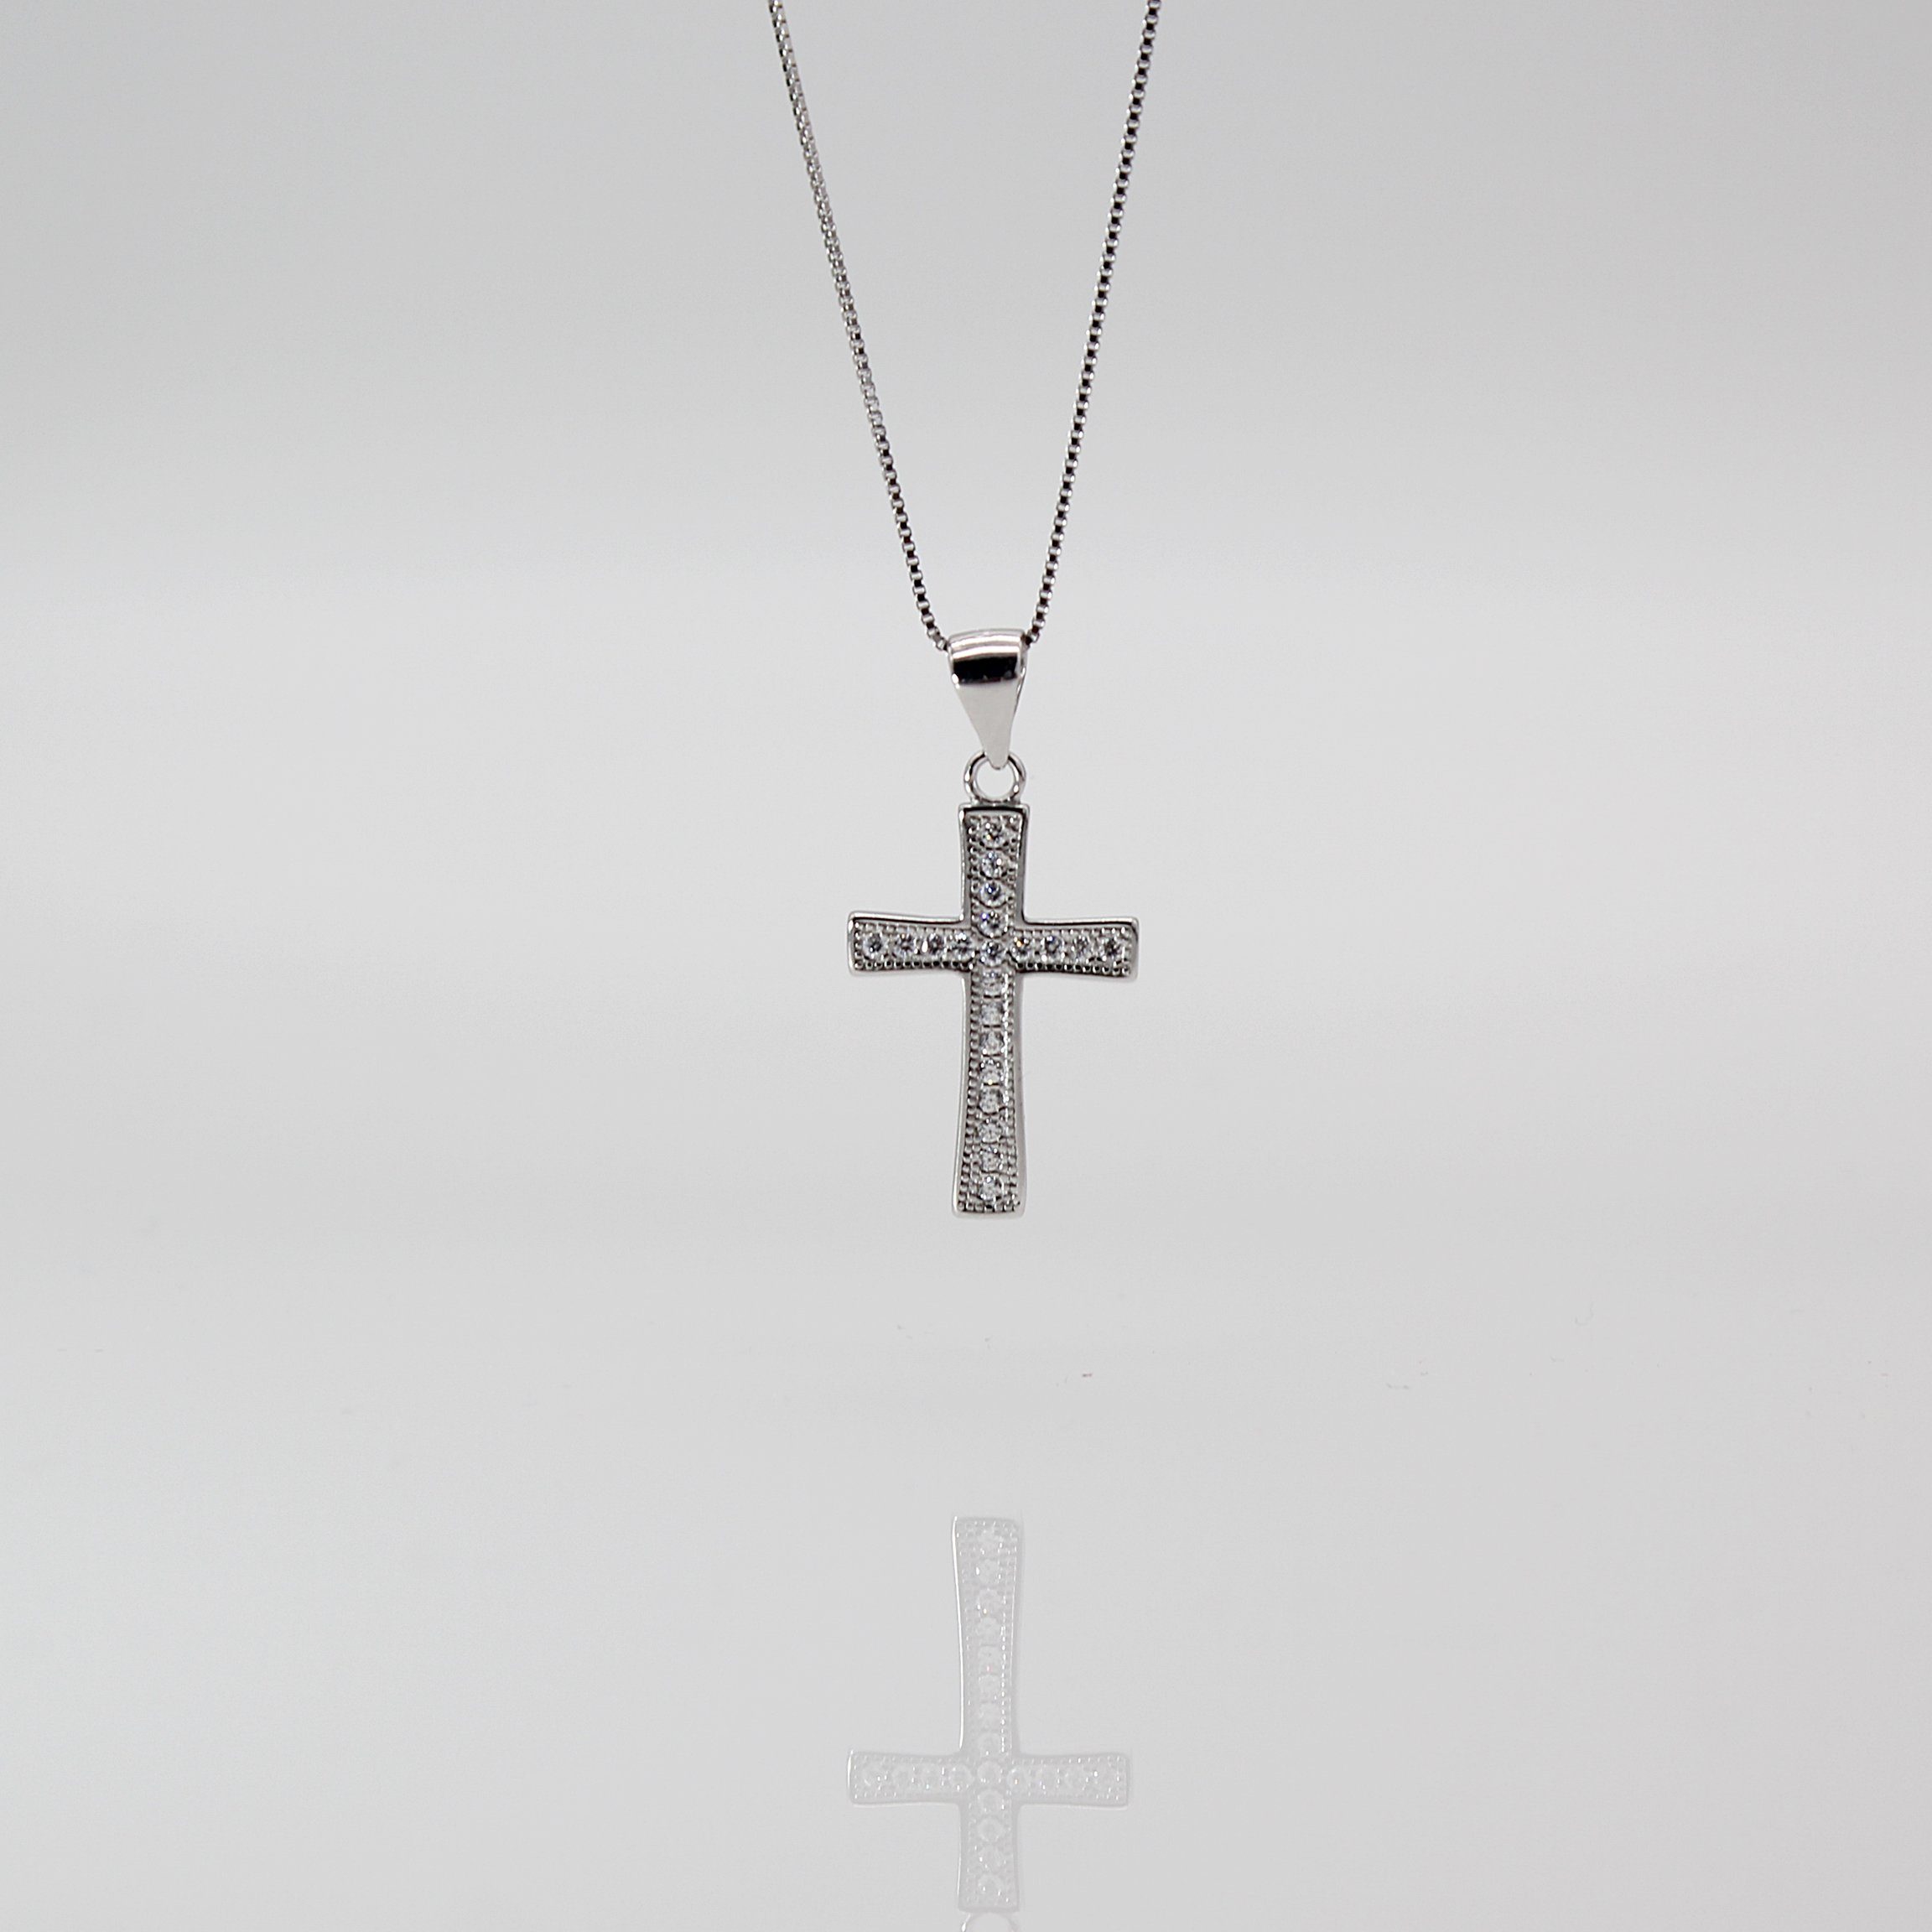 ELLAWIL Silberkette Kreuzkette Damen Kette mit Kreuz Anhänger Halskette  Schmuck (Kettenlänge 50 cm, Sterling Silber 925), inklusive  Geschenkschachtel